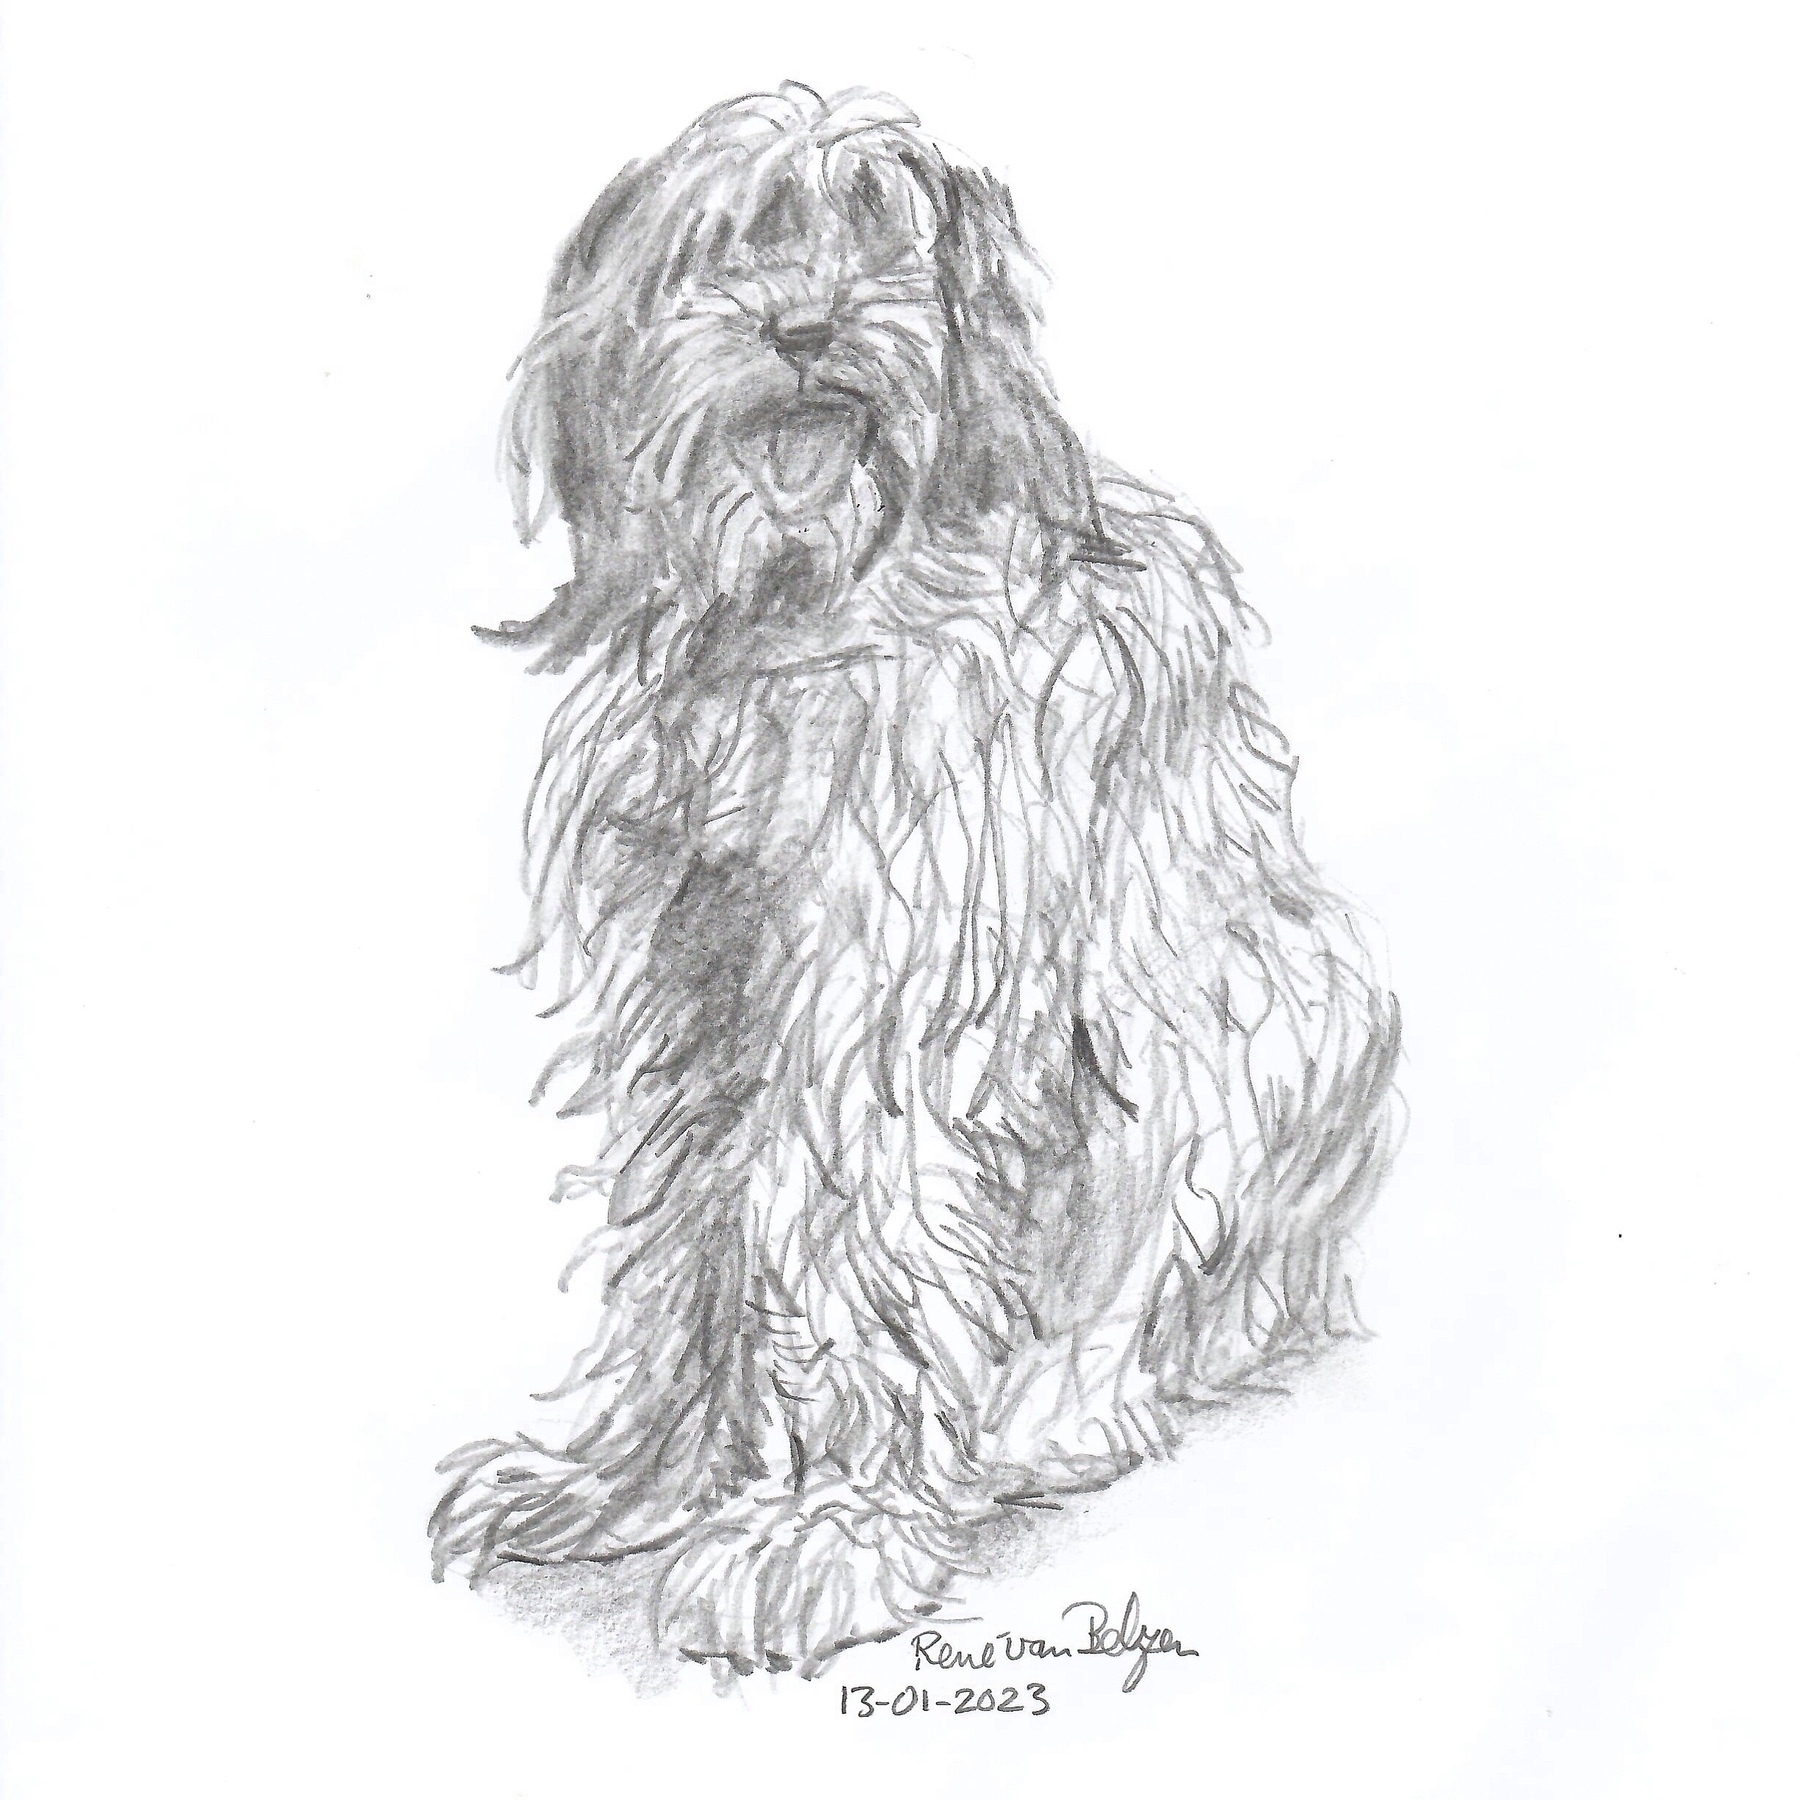 pencil sketch of a Schapendoes dog